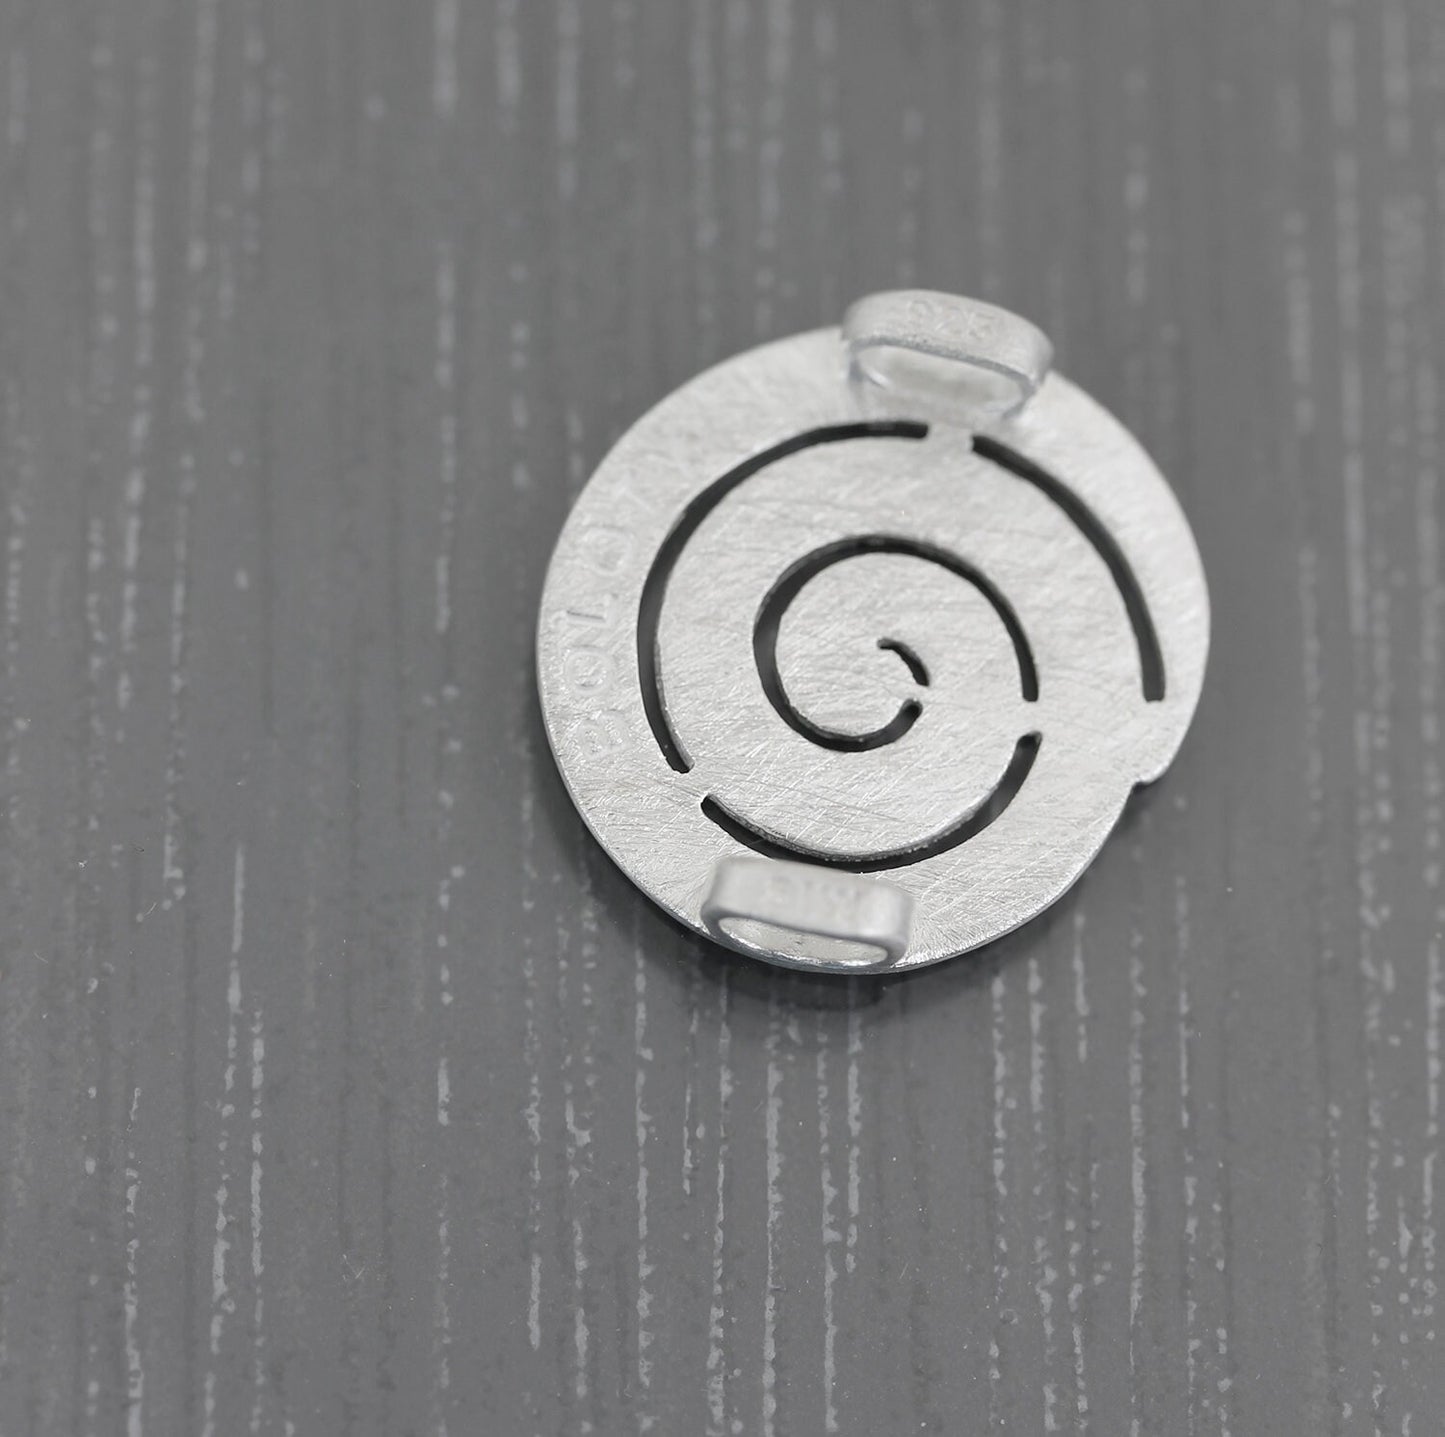 22mm Pendentif Bolo spirale en Argent 925 brossé Ring Ding. Perle charme pour cuir.